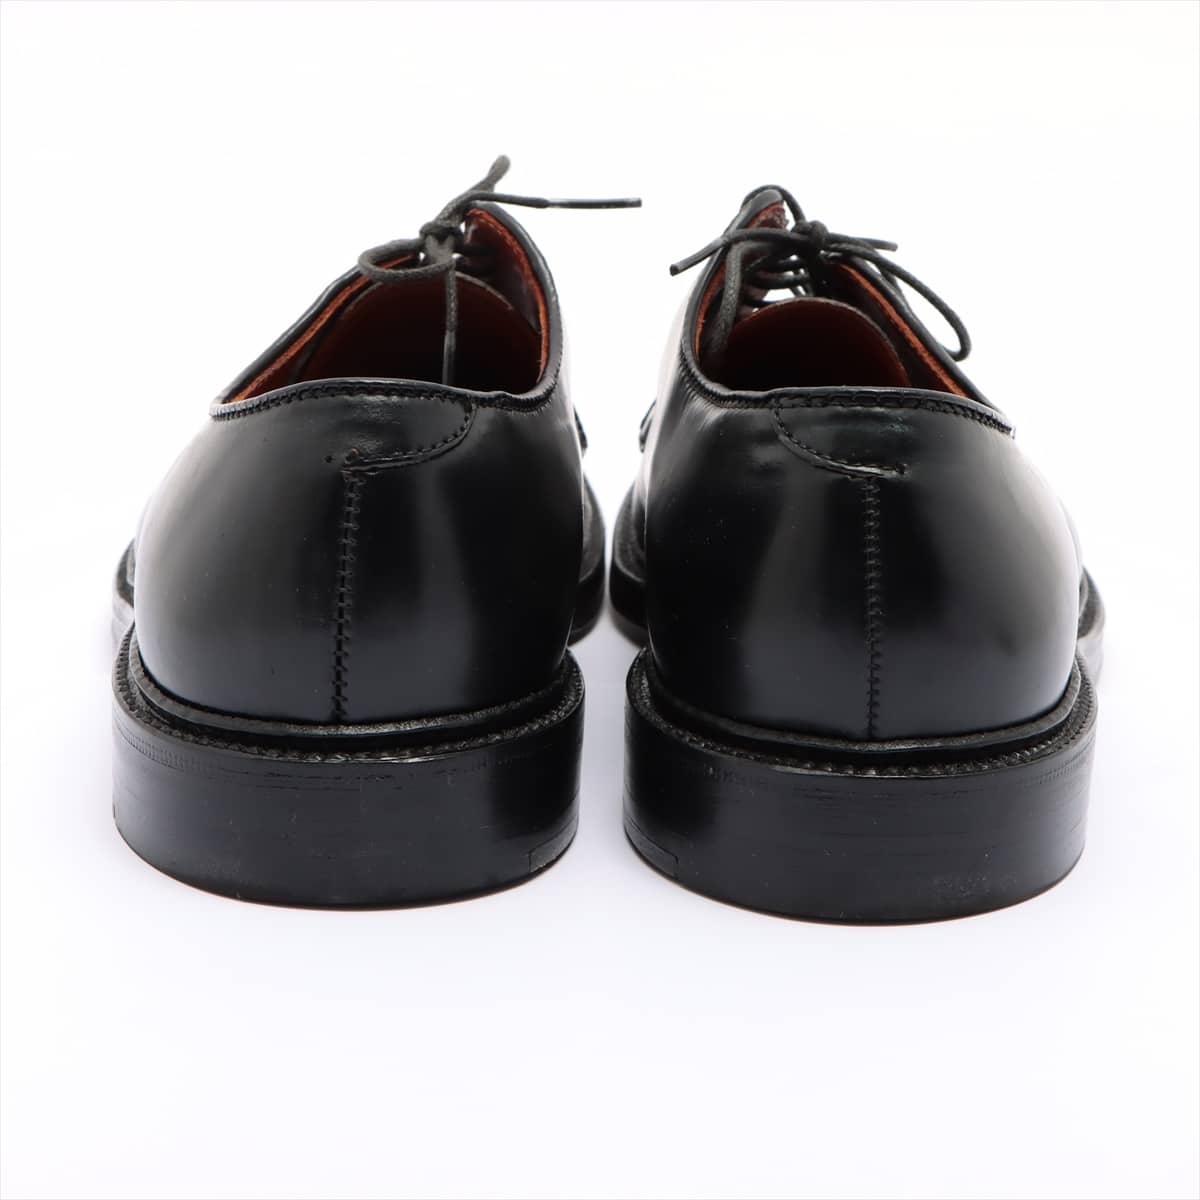 Alden Plain Leather Dress shoes 9 Men's Black